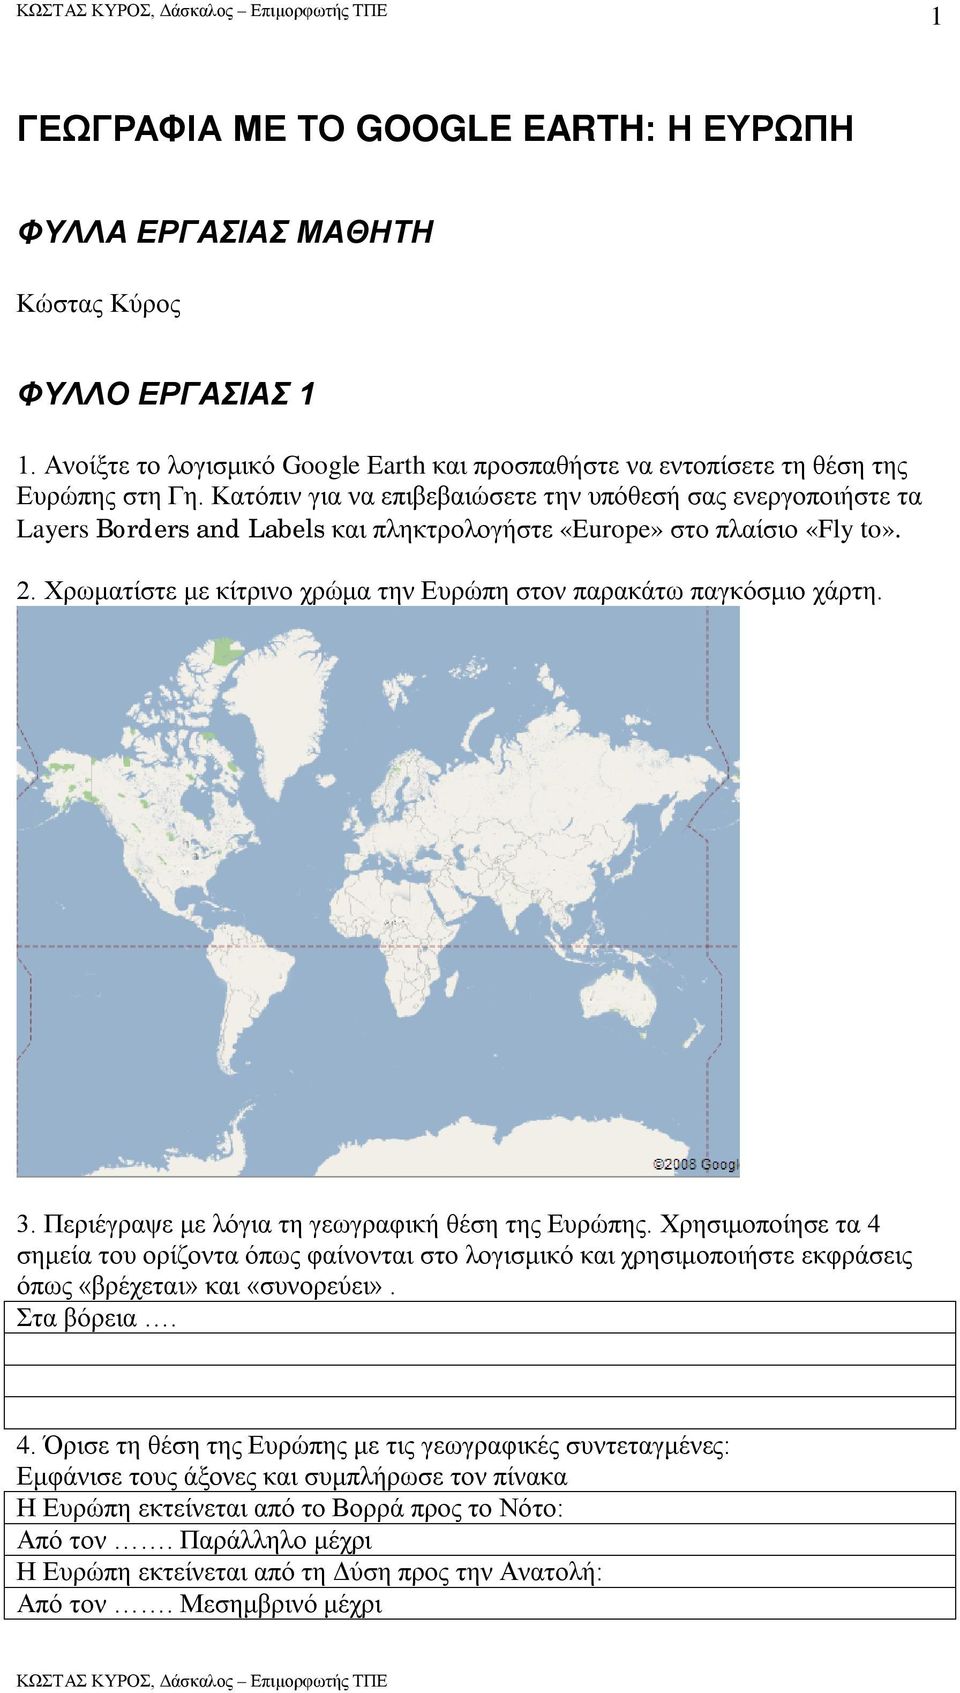 Χρωματίστε με κίτρινο χρώμα την Ευρώπη στον παρακάτω παγκόσμιο χάρτη. 3. Περιέγραψε με λόγια τη γεωγραφική θέση της Ευρώπης.